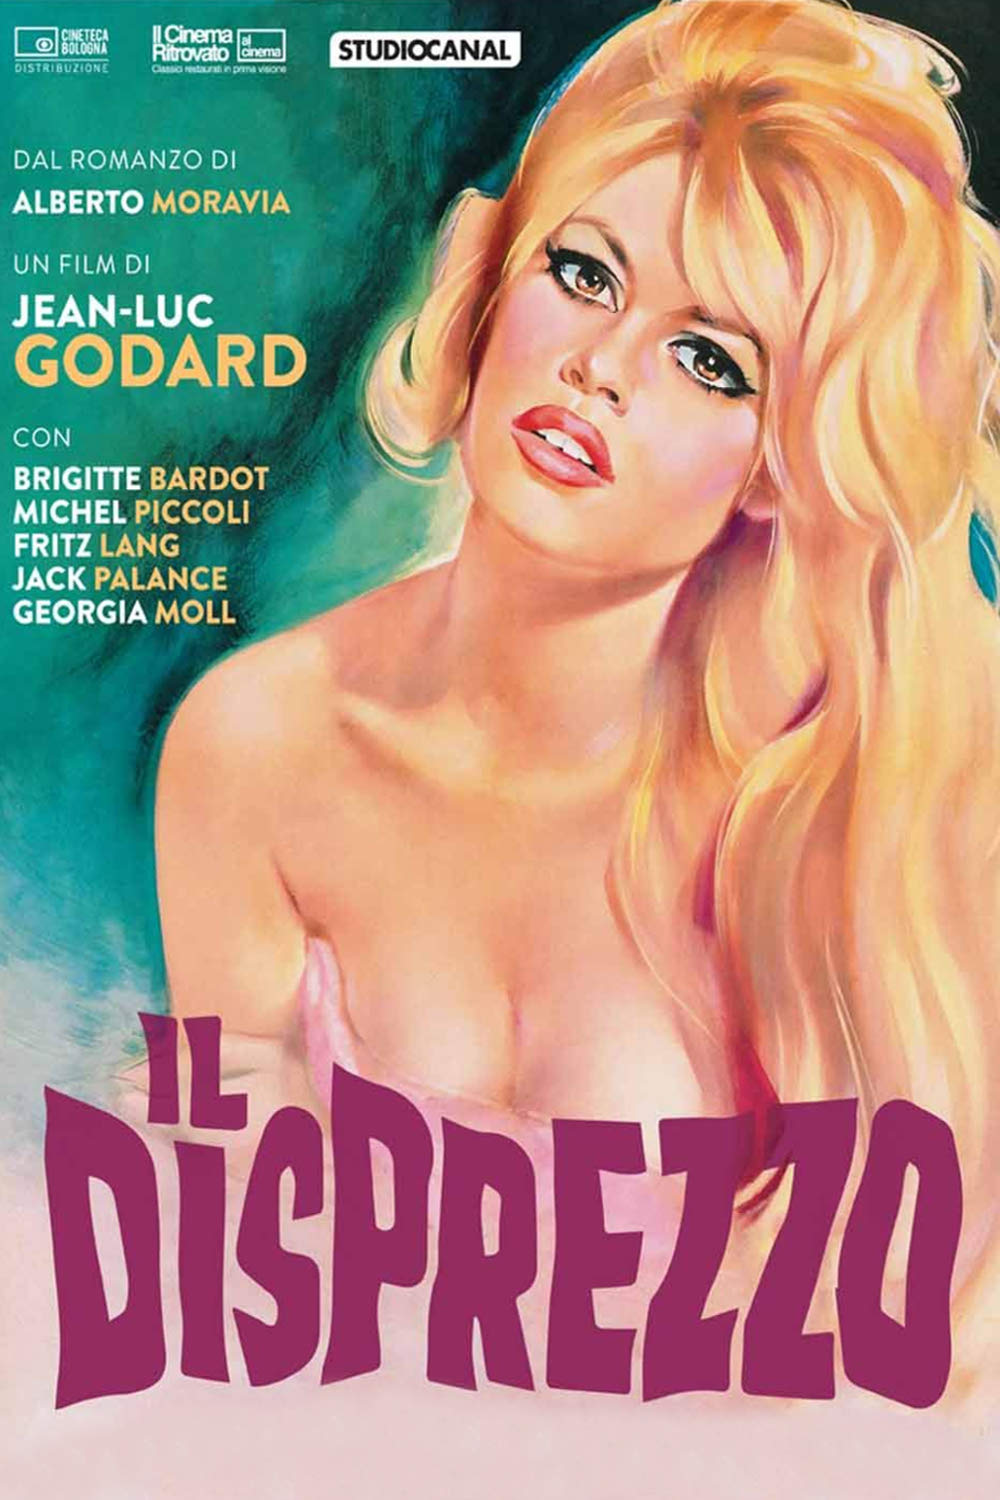 Il disprezzo (1963)